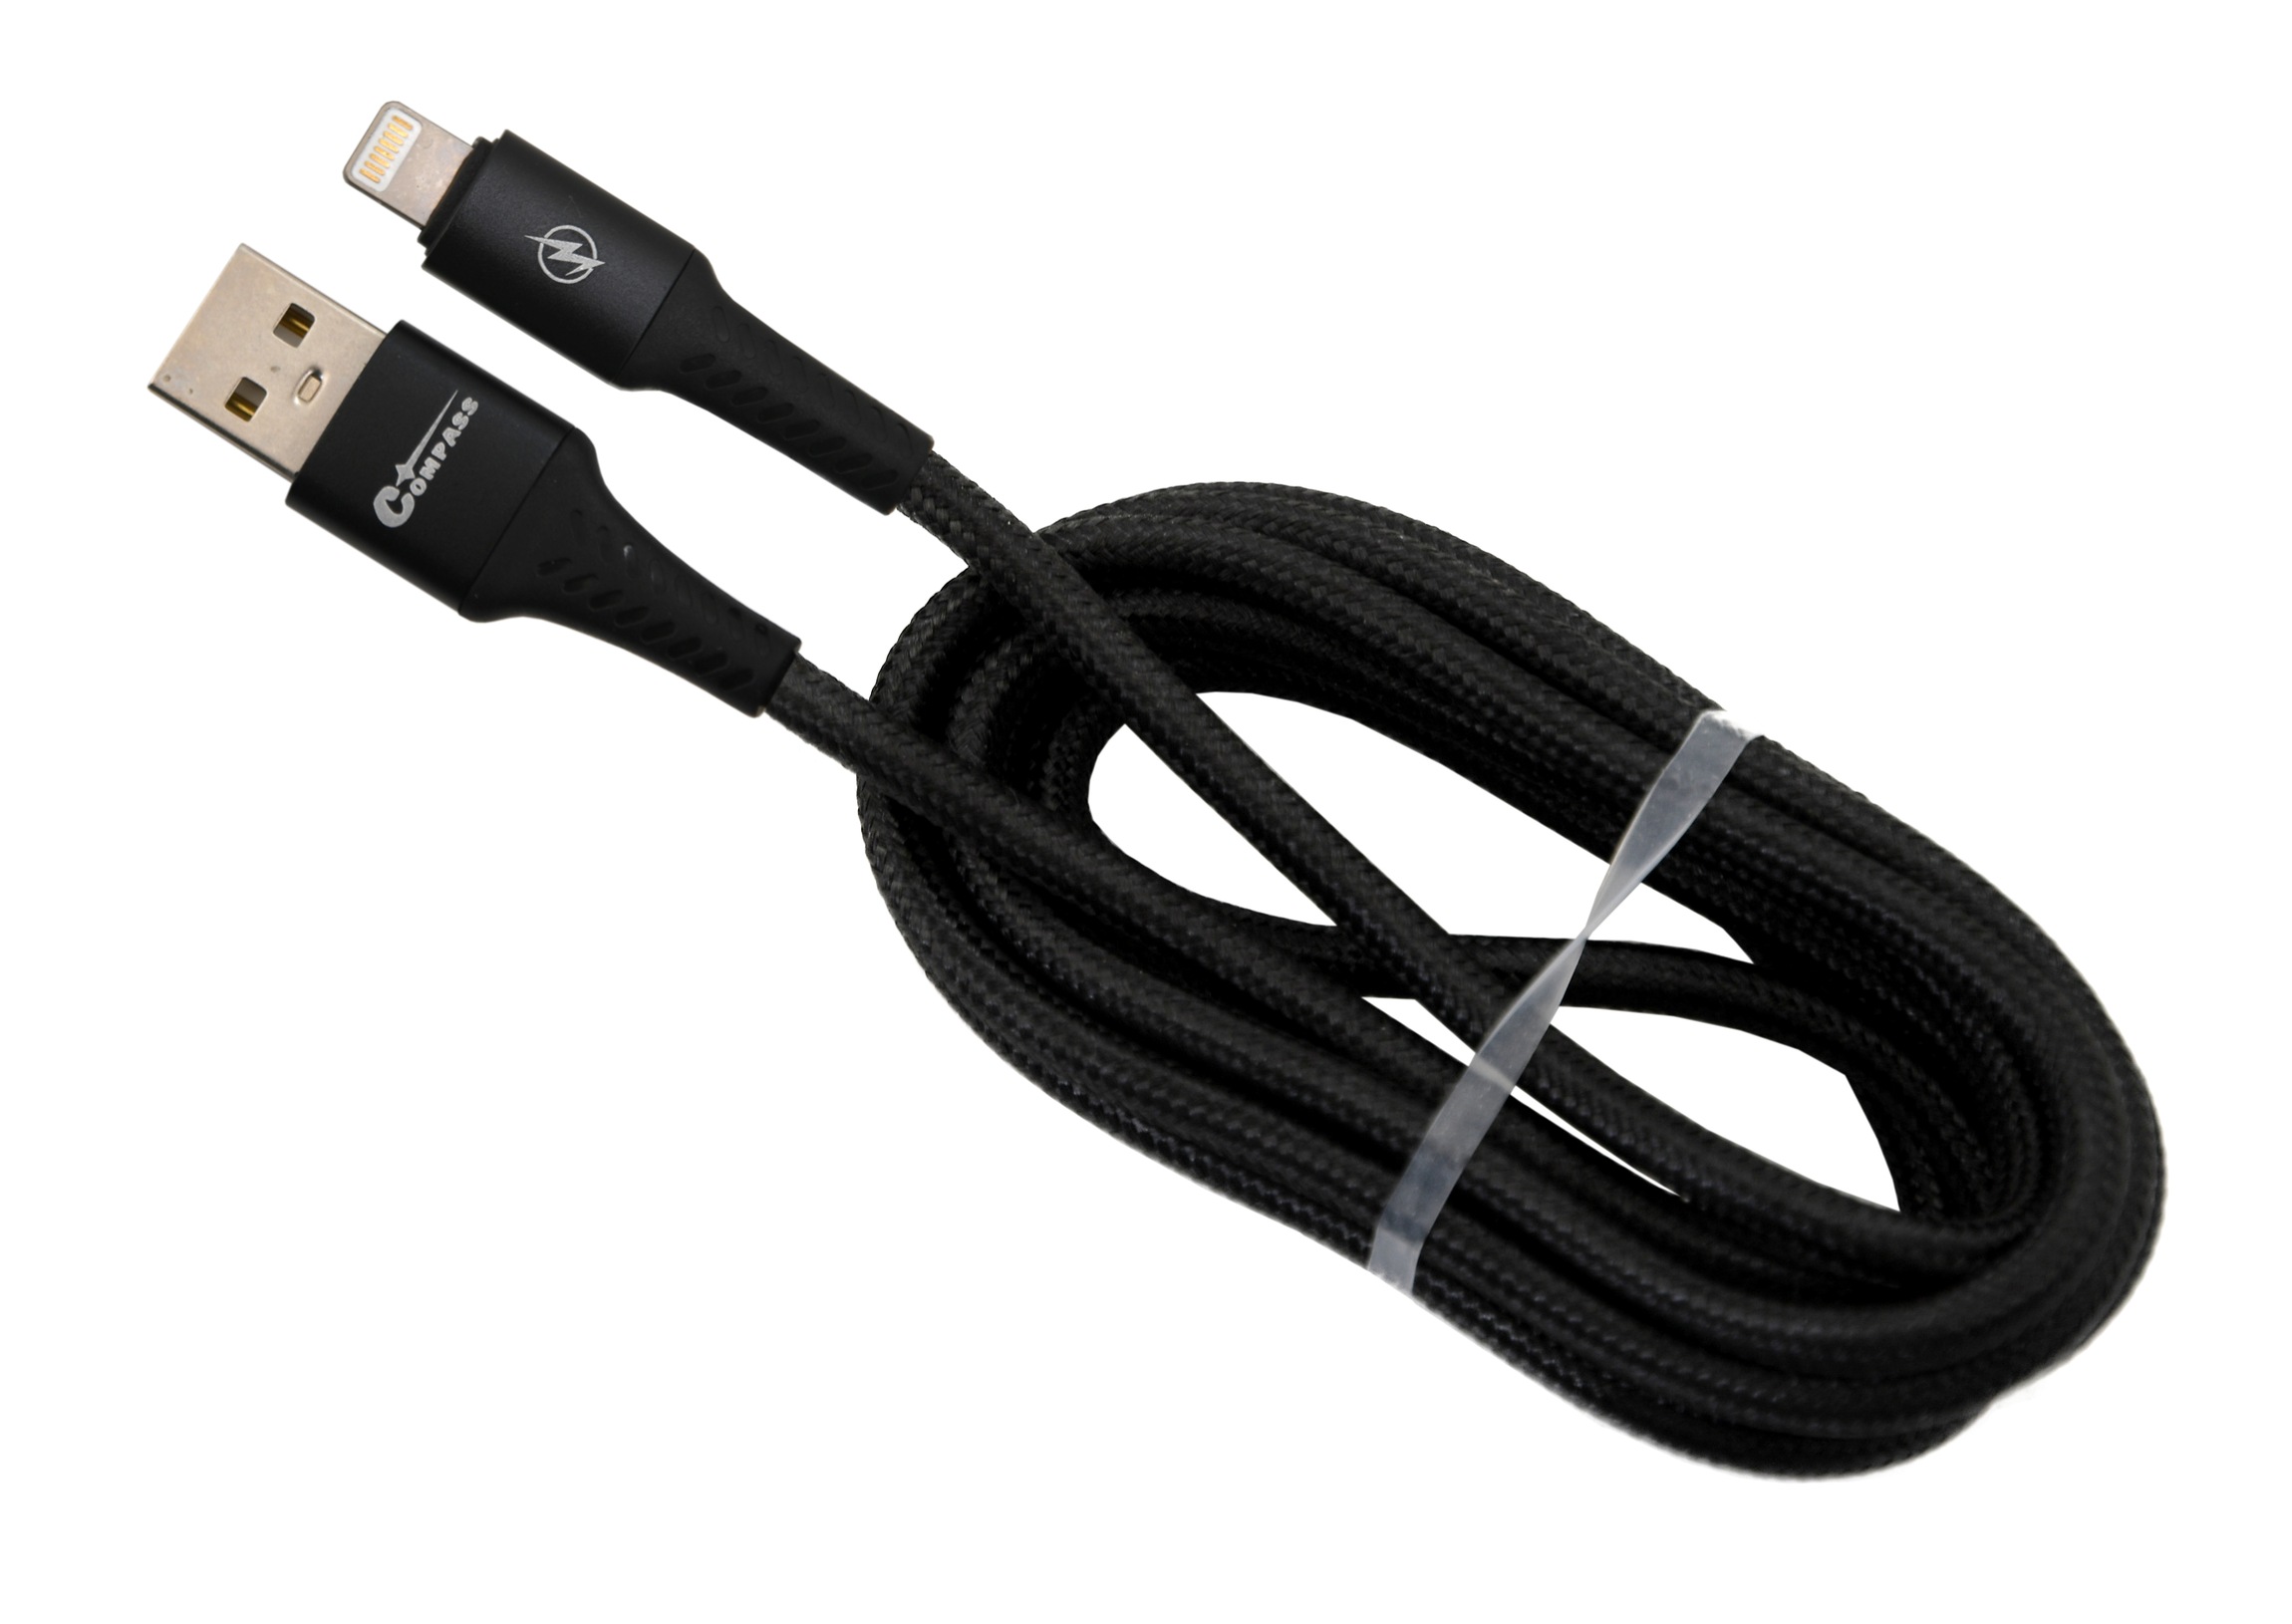 Datový a nabíjecí kabel SPEED USB-A / iPhone 480 Mb/s 1,5m